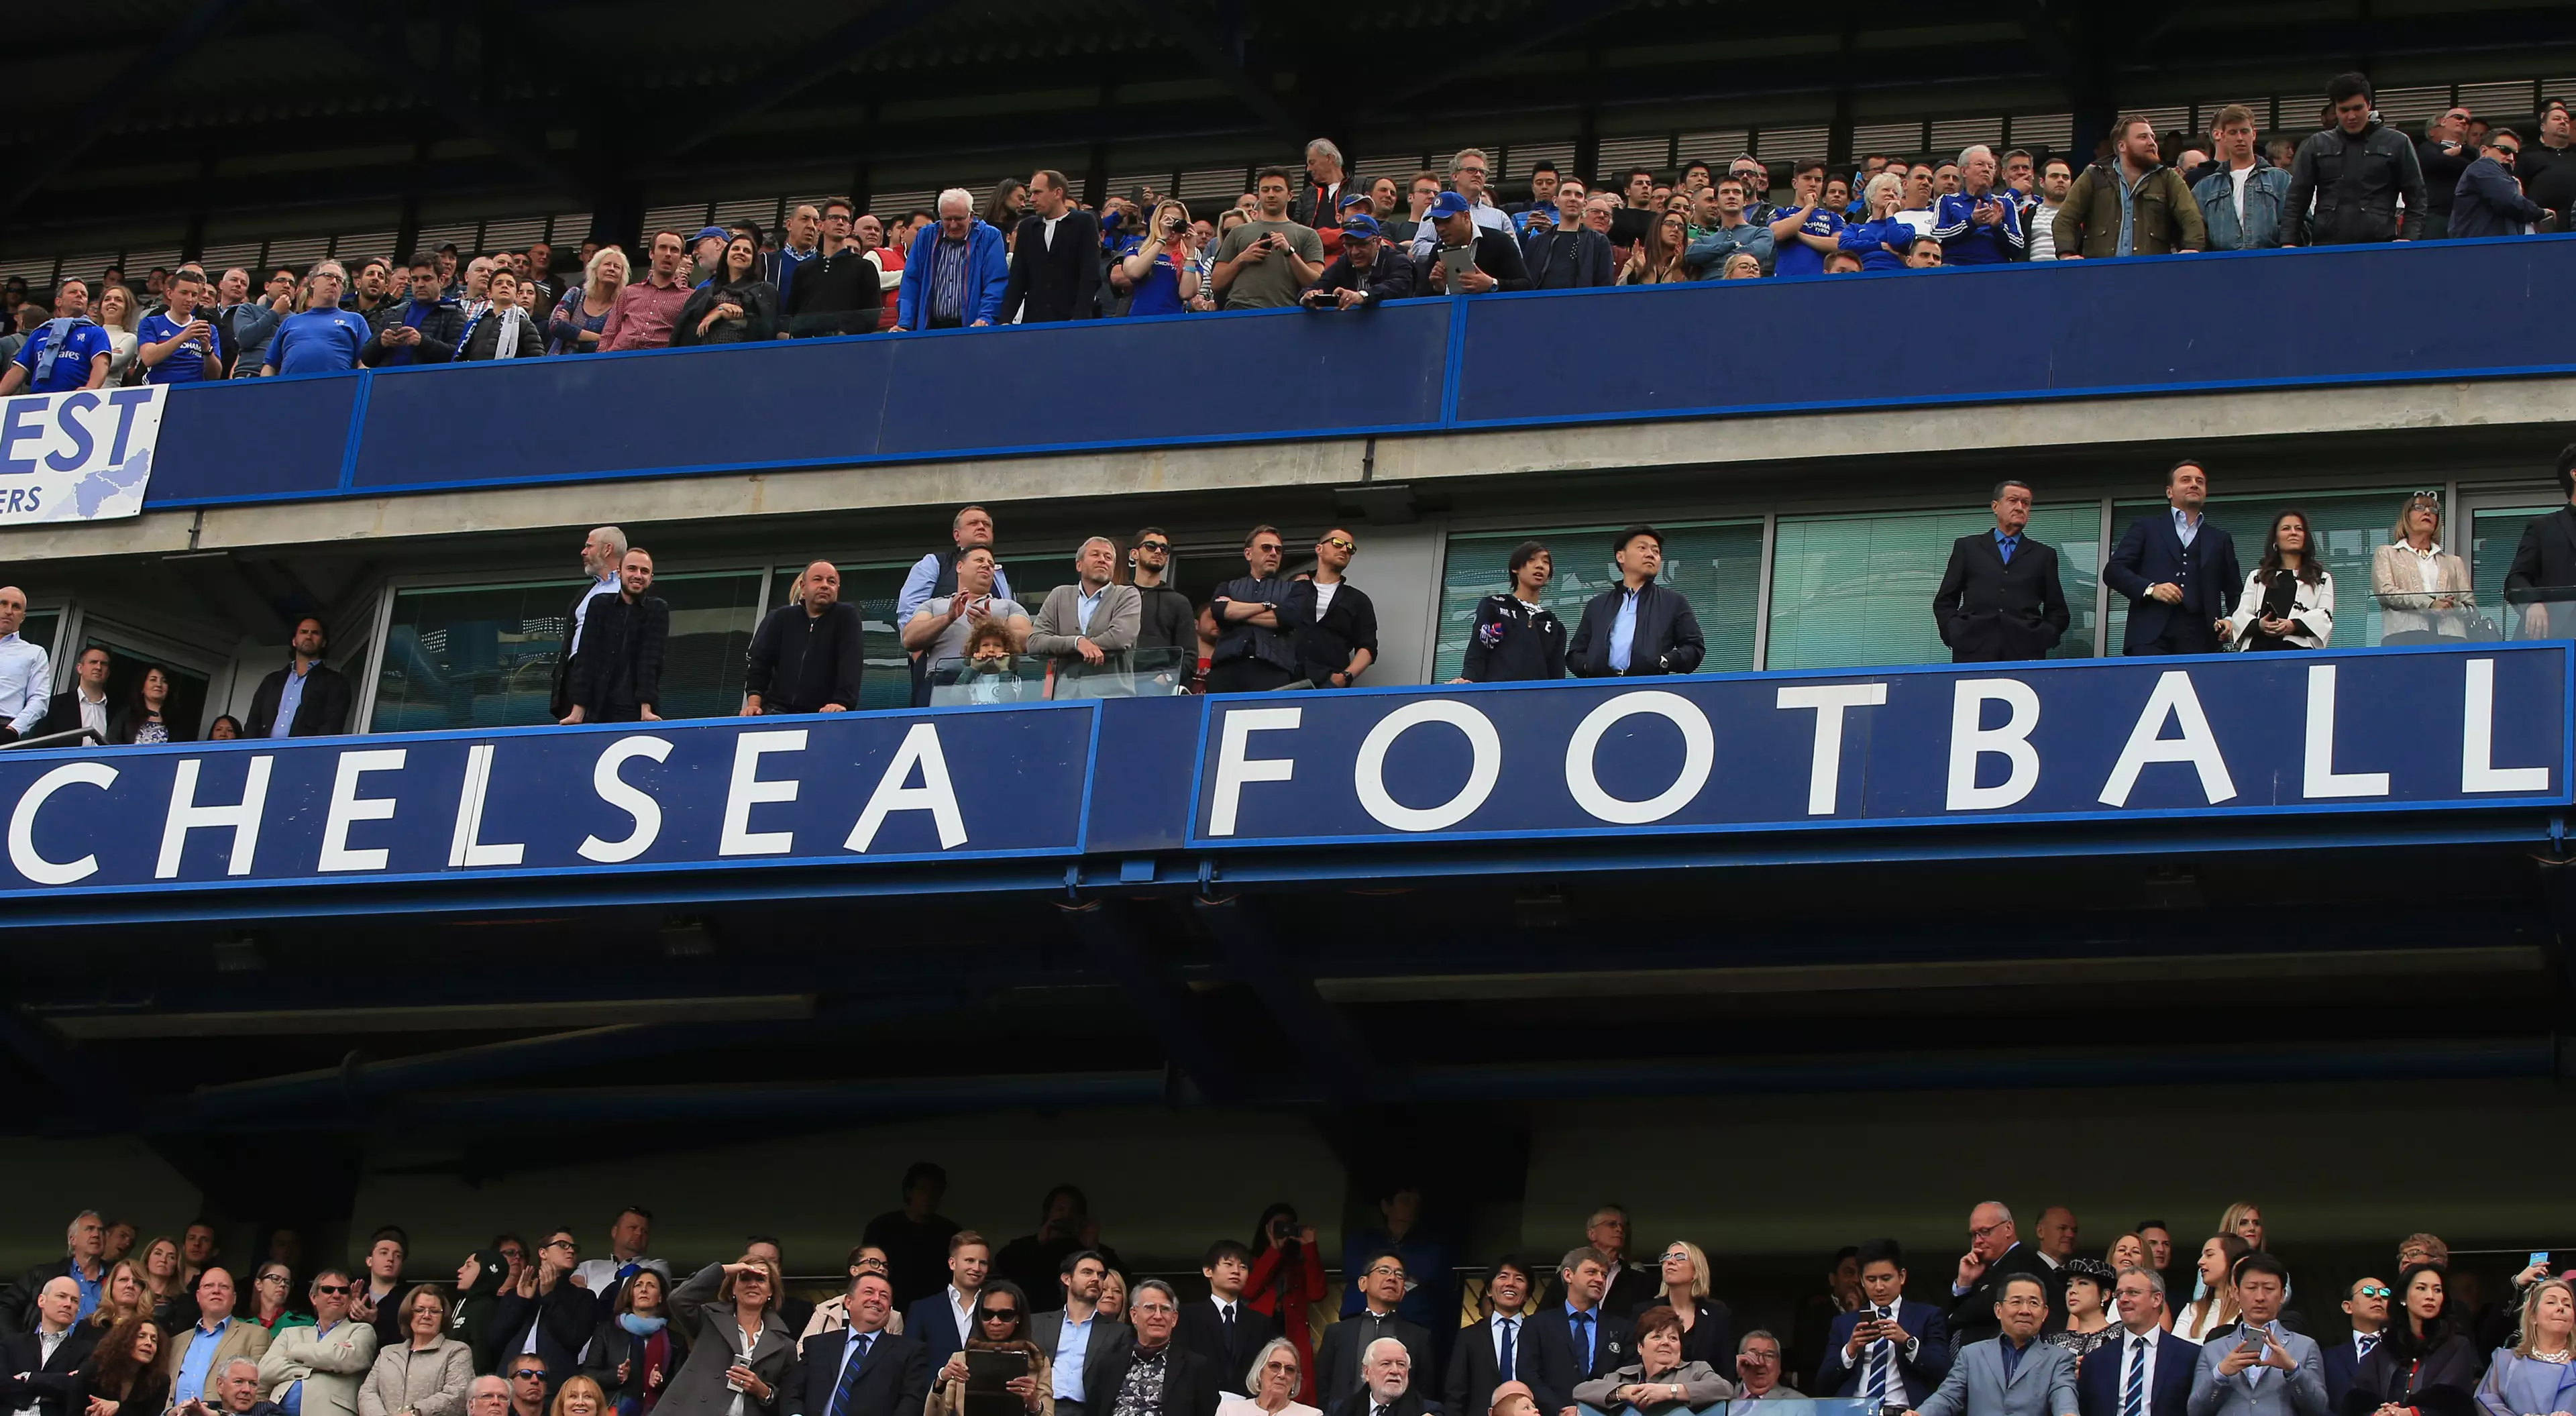  Chelsea's New 2016/17 Away Kit Revealed